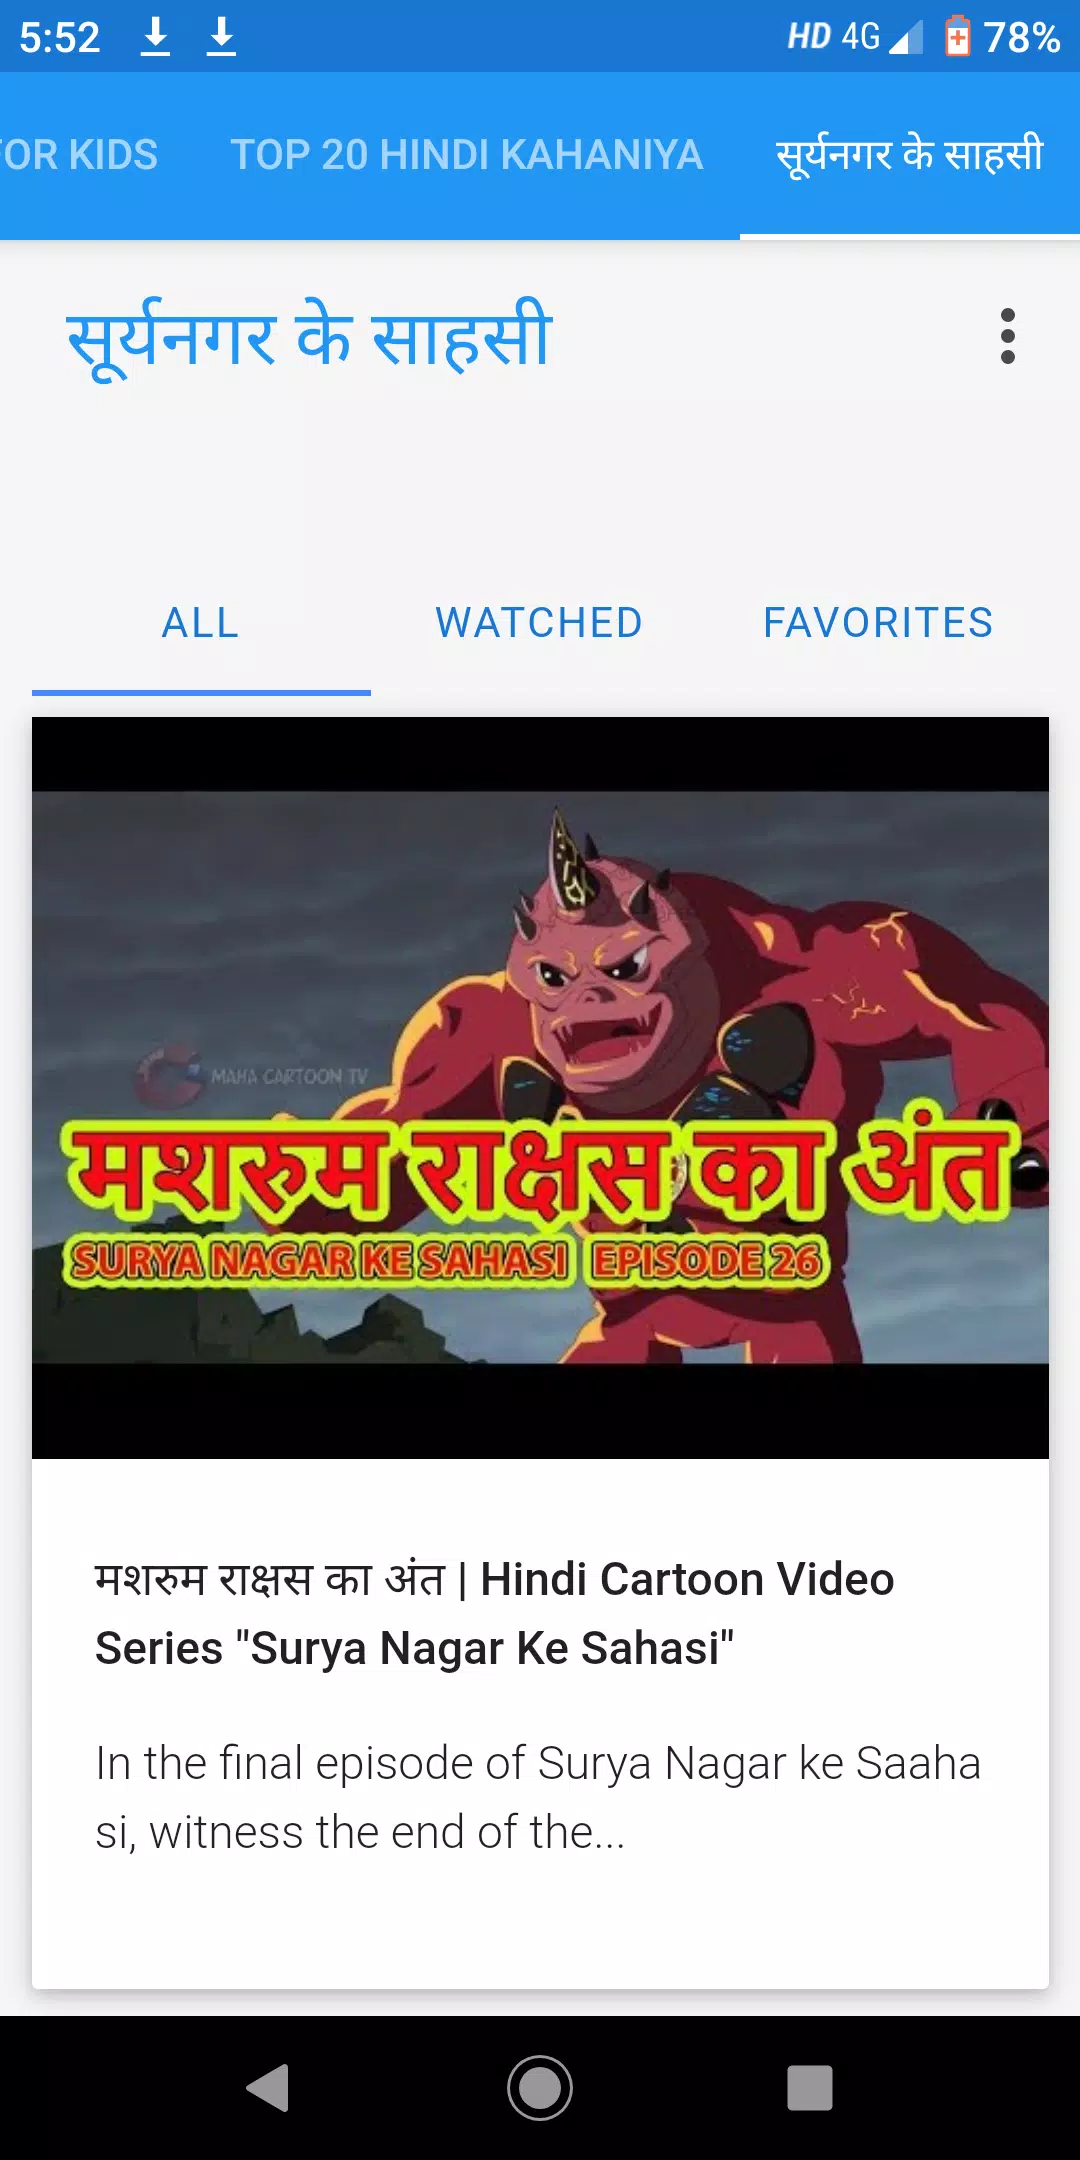 Maha Cartoon TV XD Android के लिए APK डाउनलोड करें